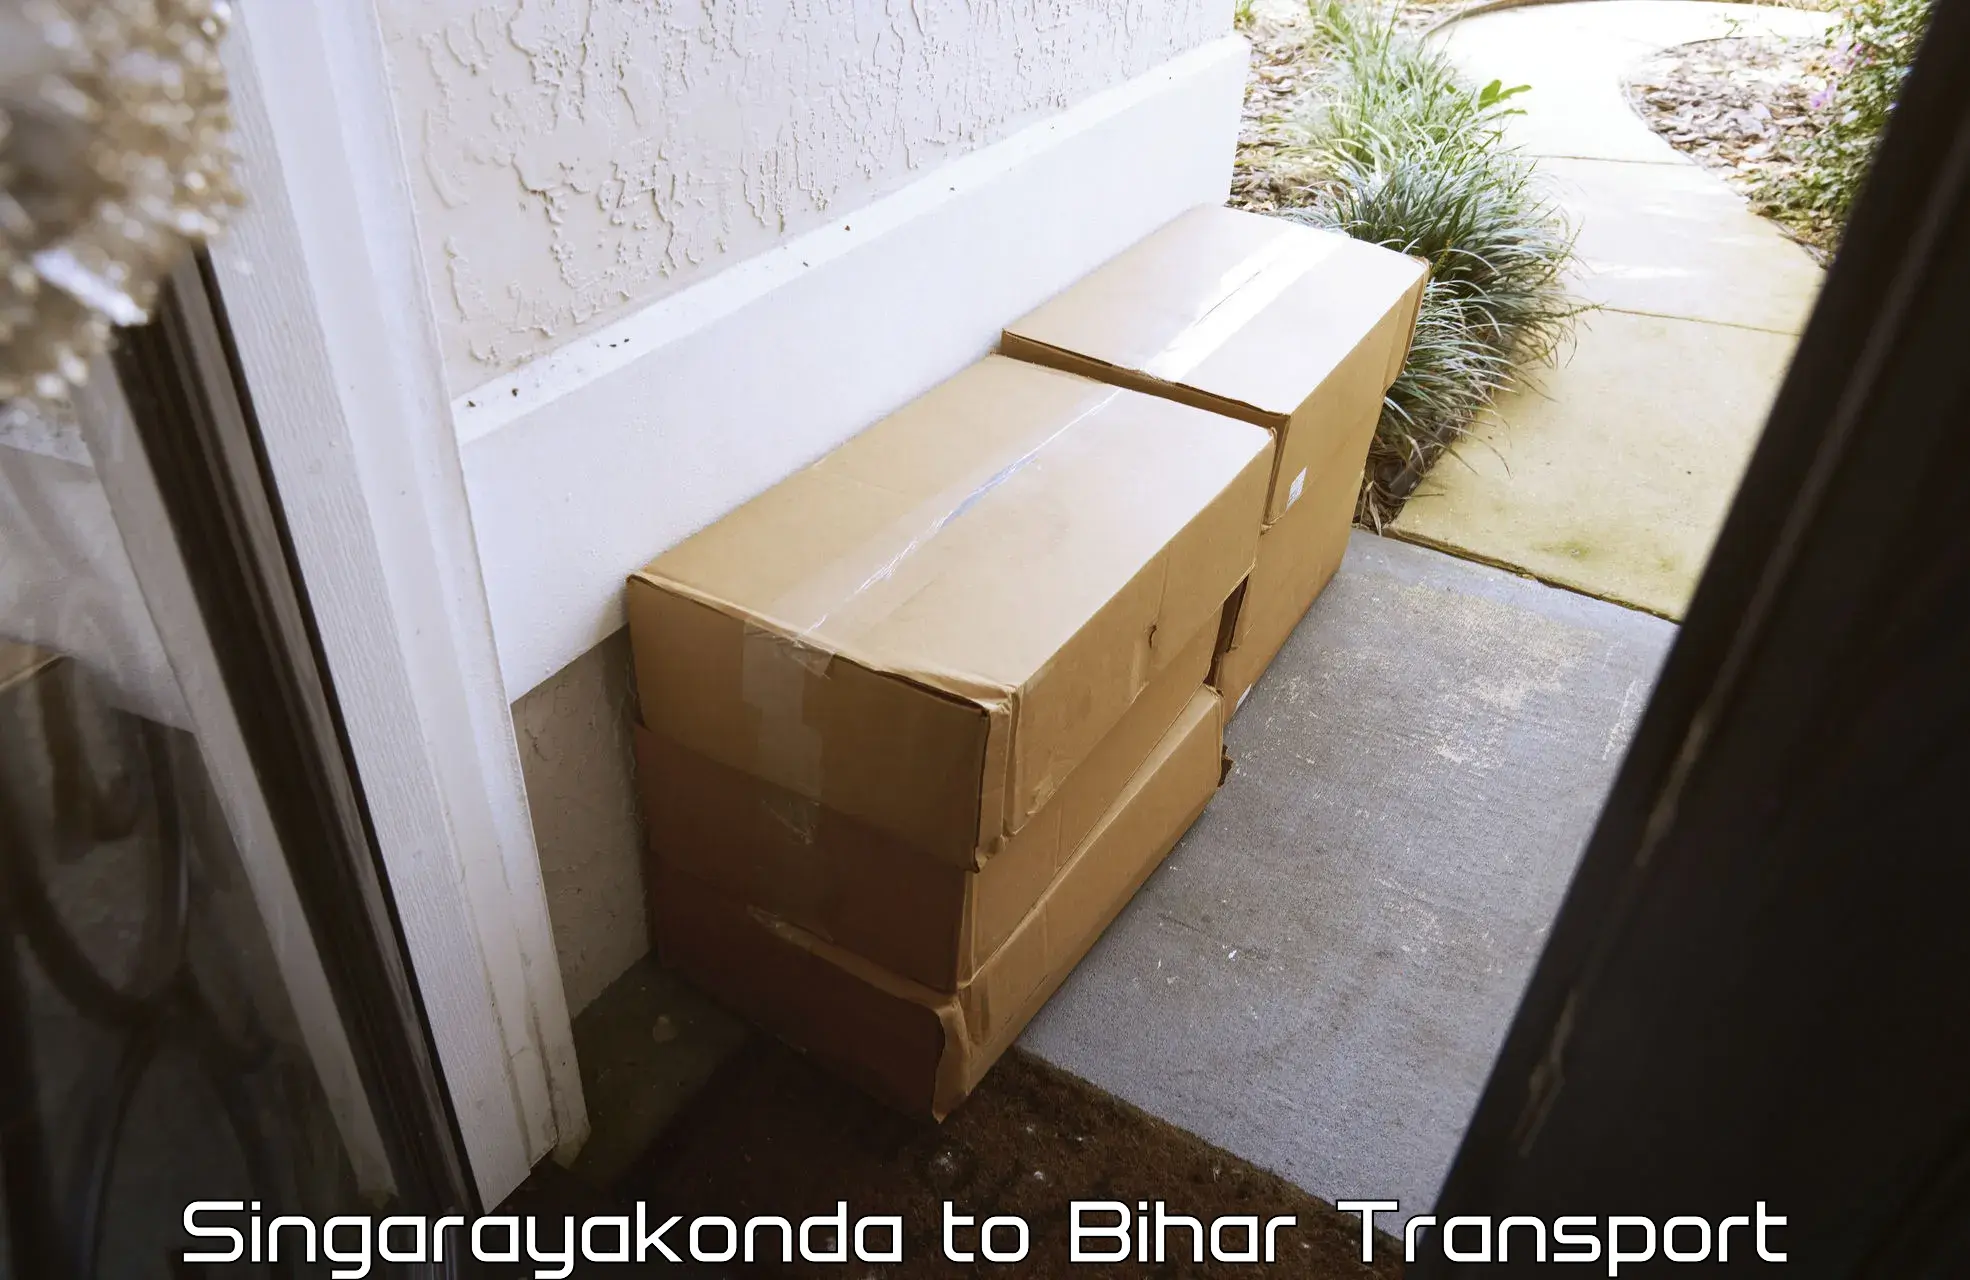 Furniture transport service Singarayakonda to Siwan